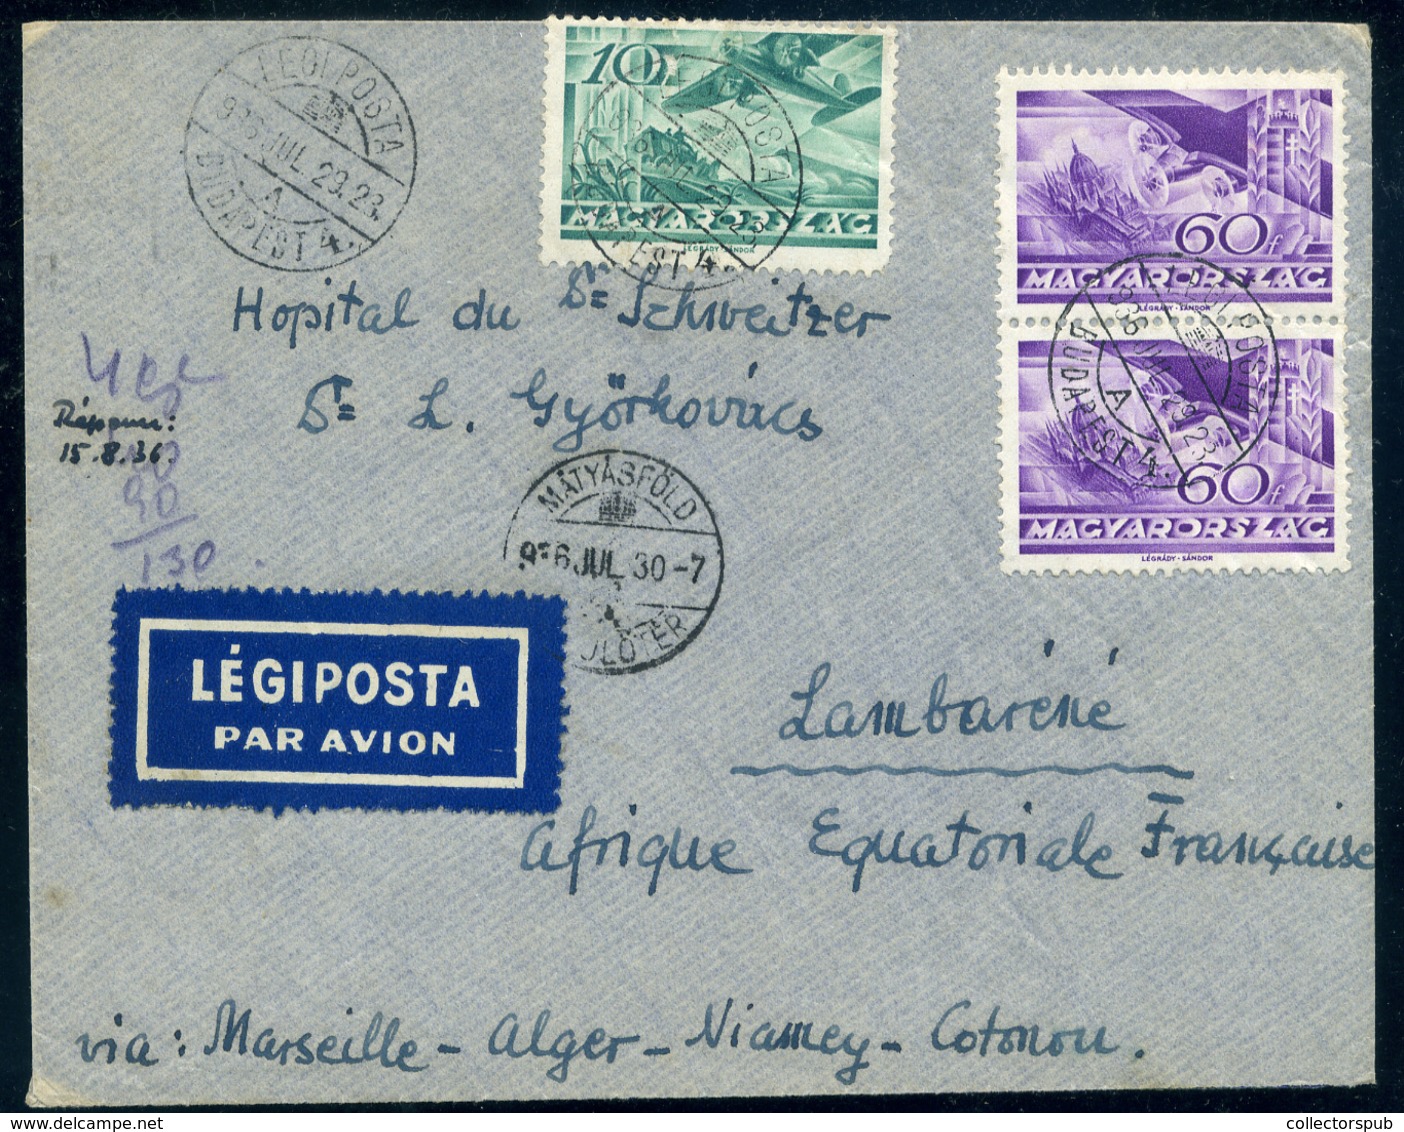 BUDAPEST MÁTYÁSFÖLD  1936. Légi Levél Francia-Egyenlítői -Afrikába (Gabon) Küldve!  /  Airmail Letter To French -Equator - Lettres & Documents